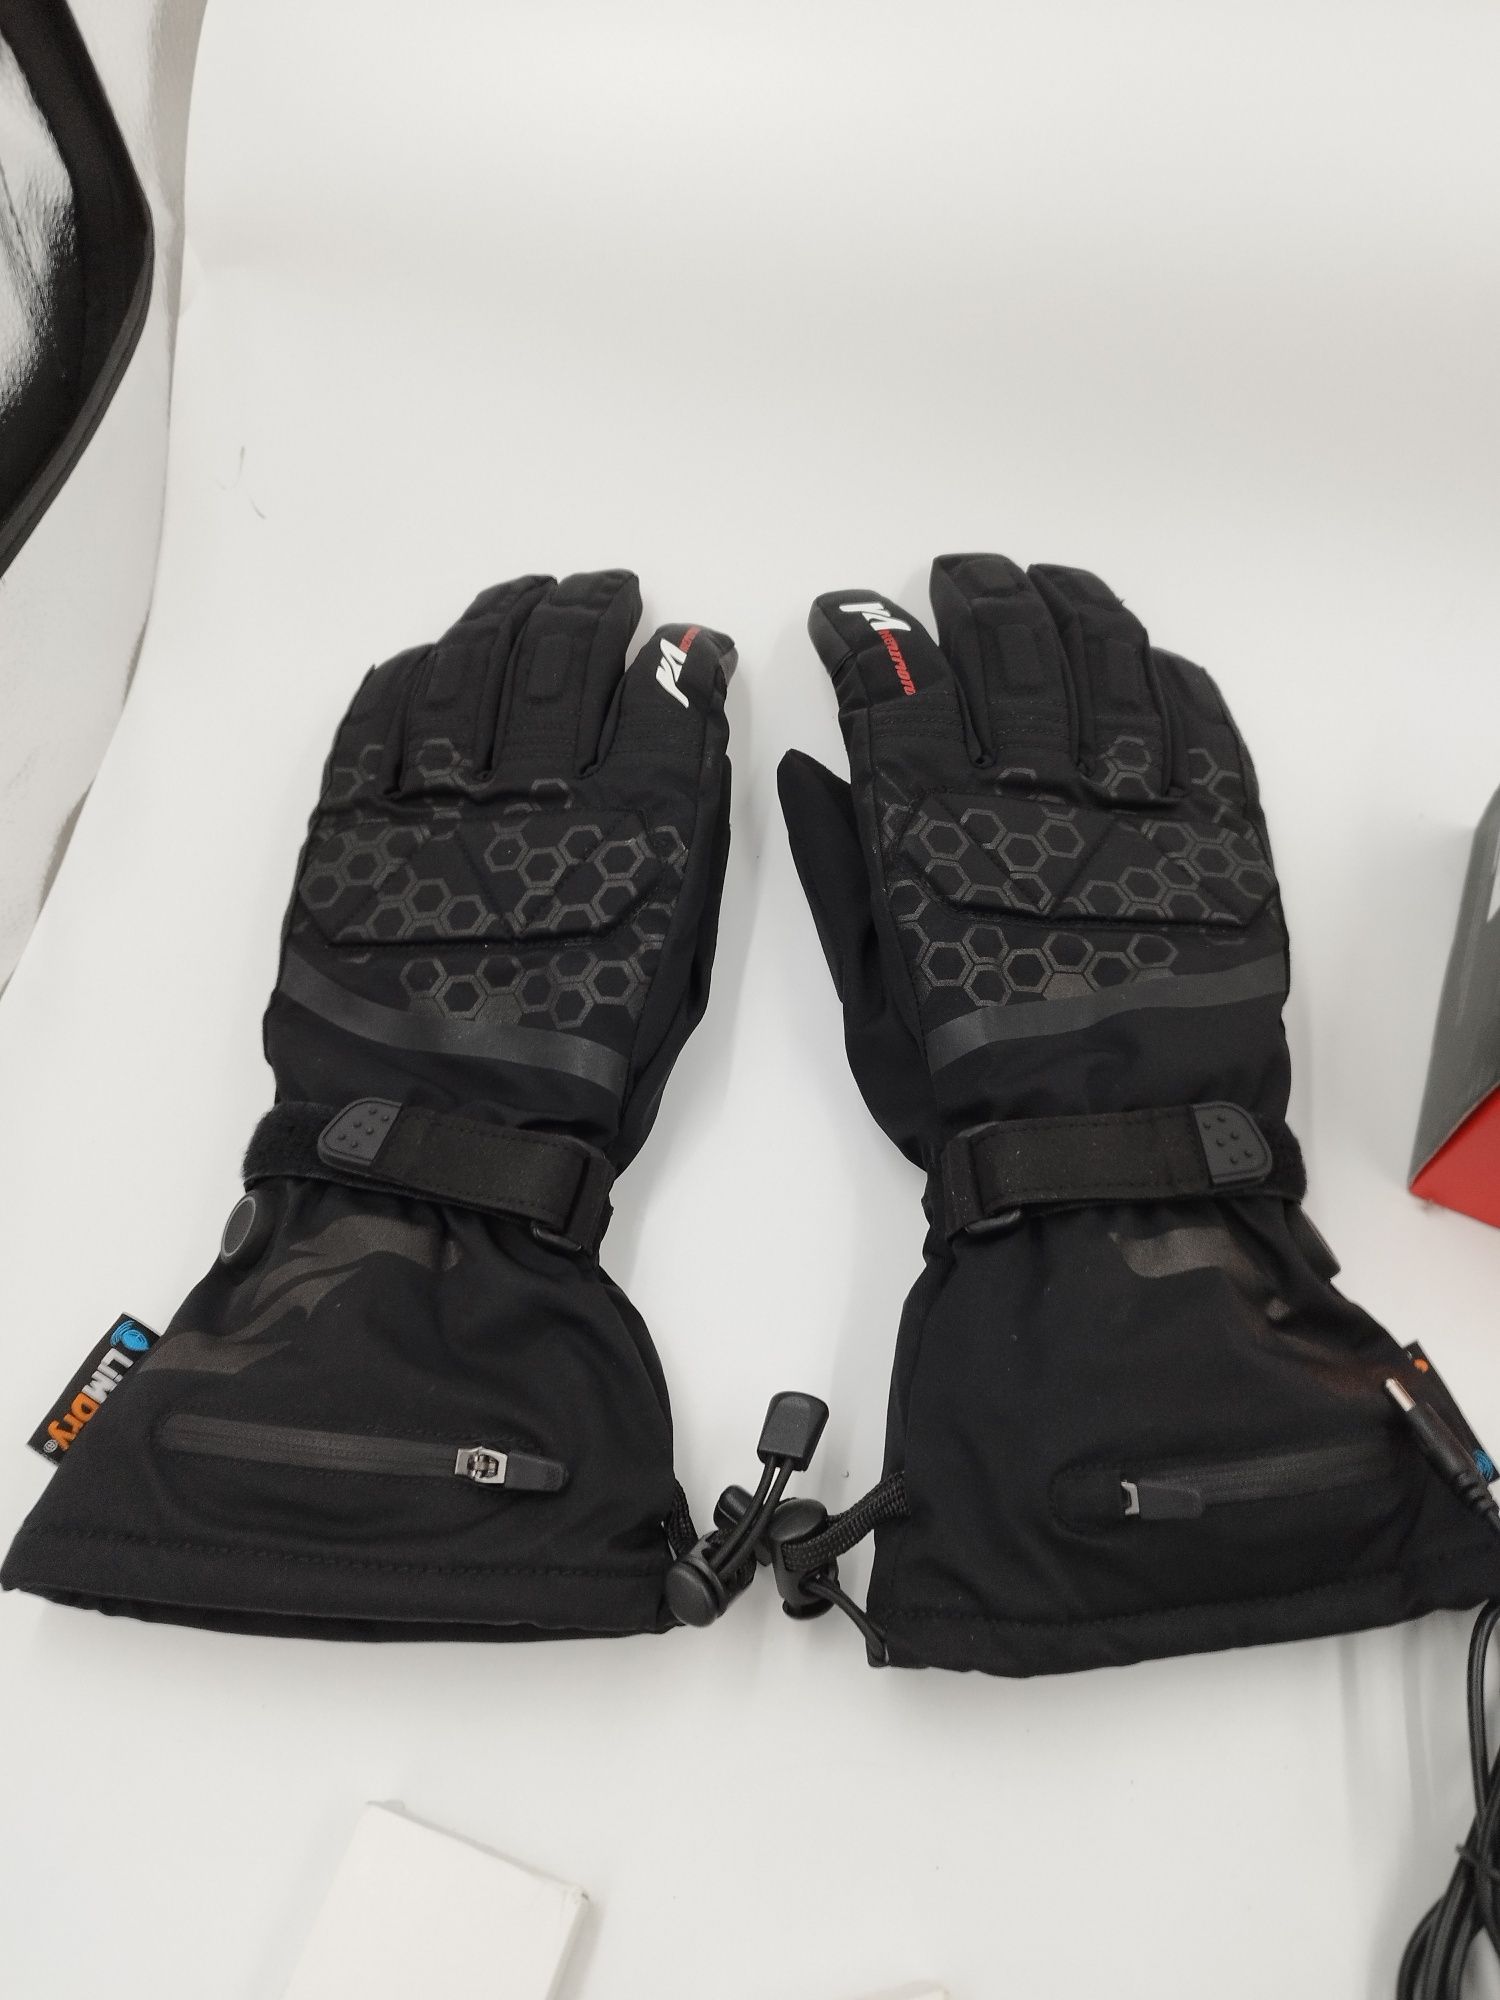 Rękawice motocyklowe narciarskie kemimoto podgrzewane rozmiar L